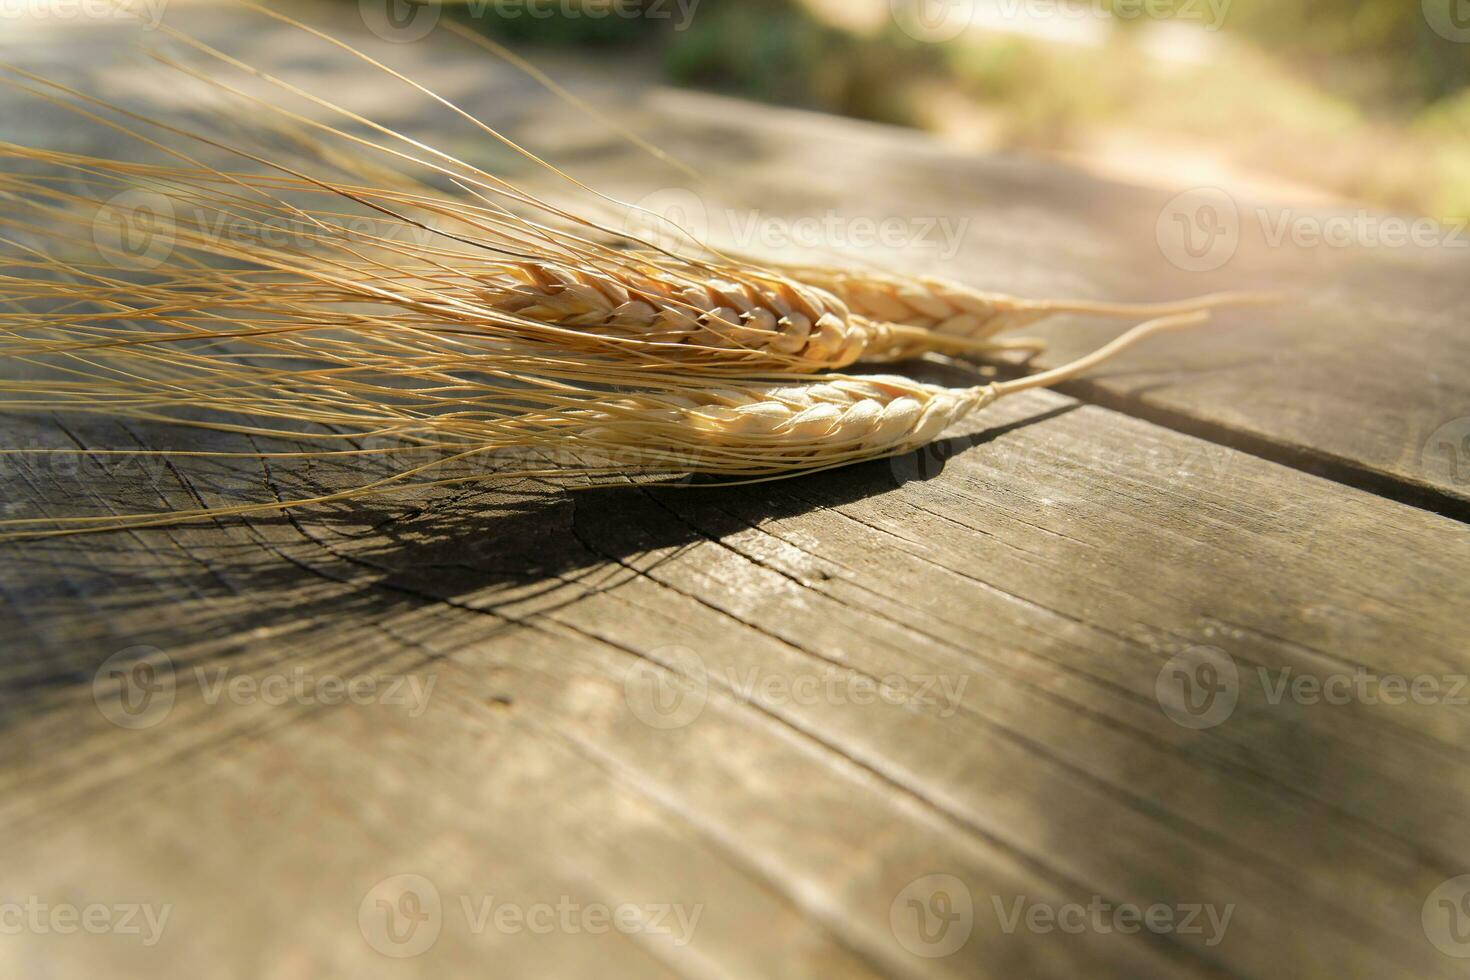 oreilles de blé sur une en bois table photo